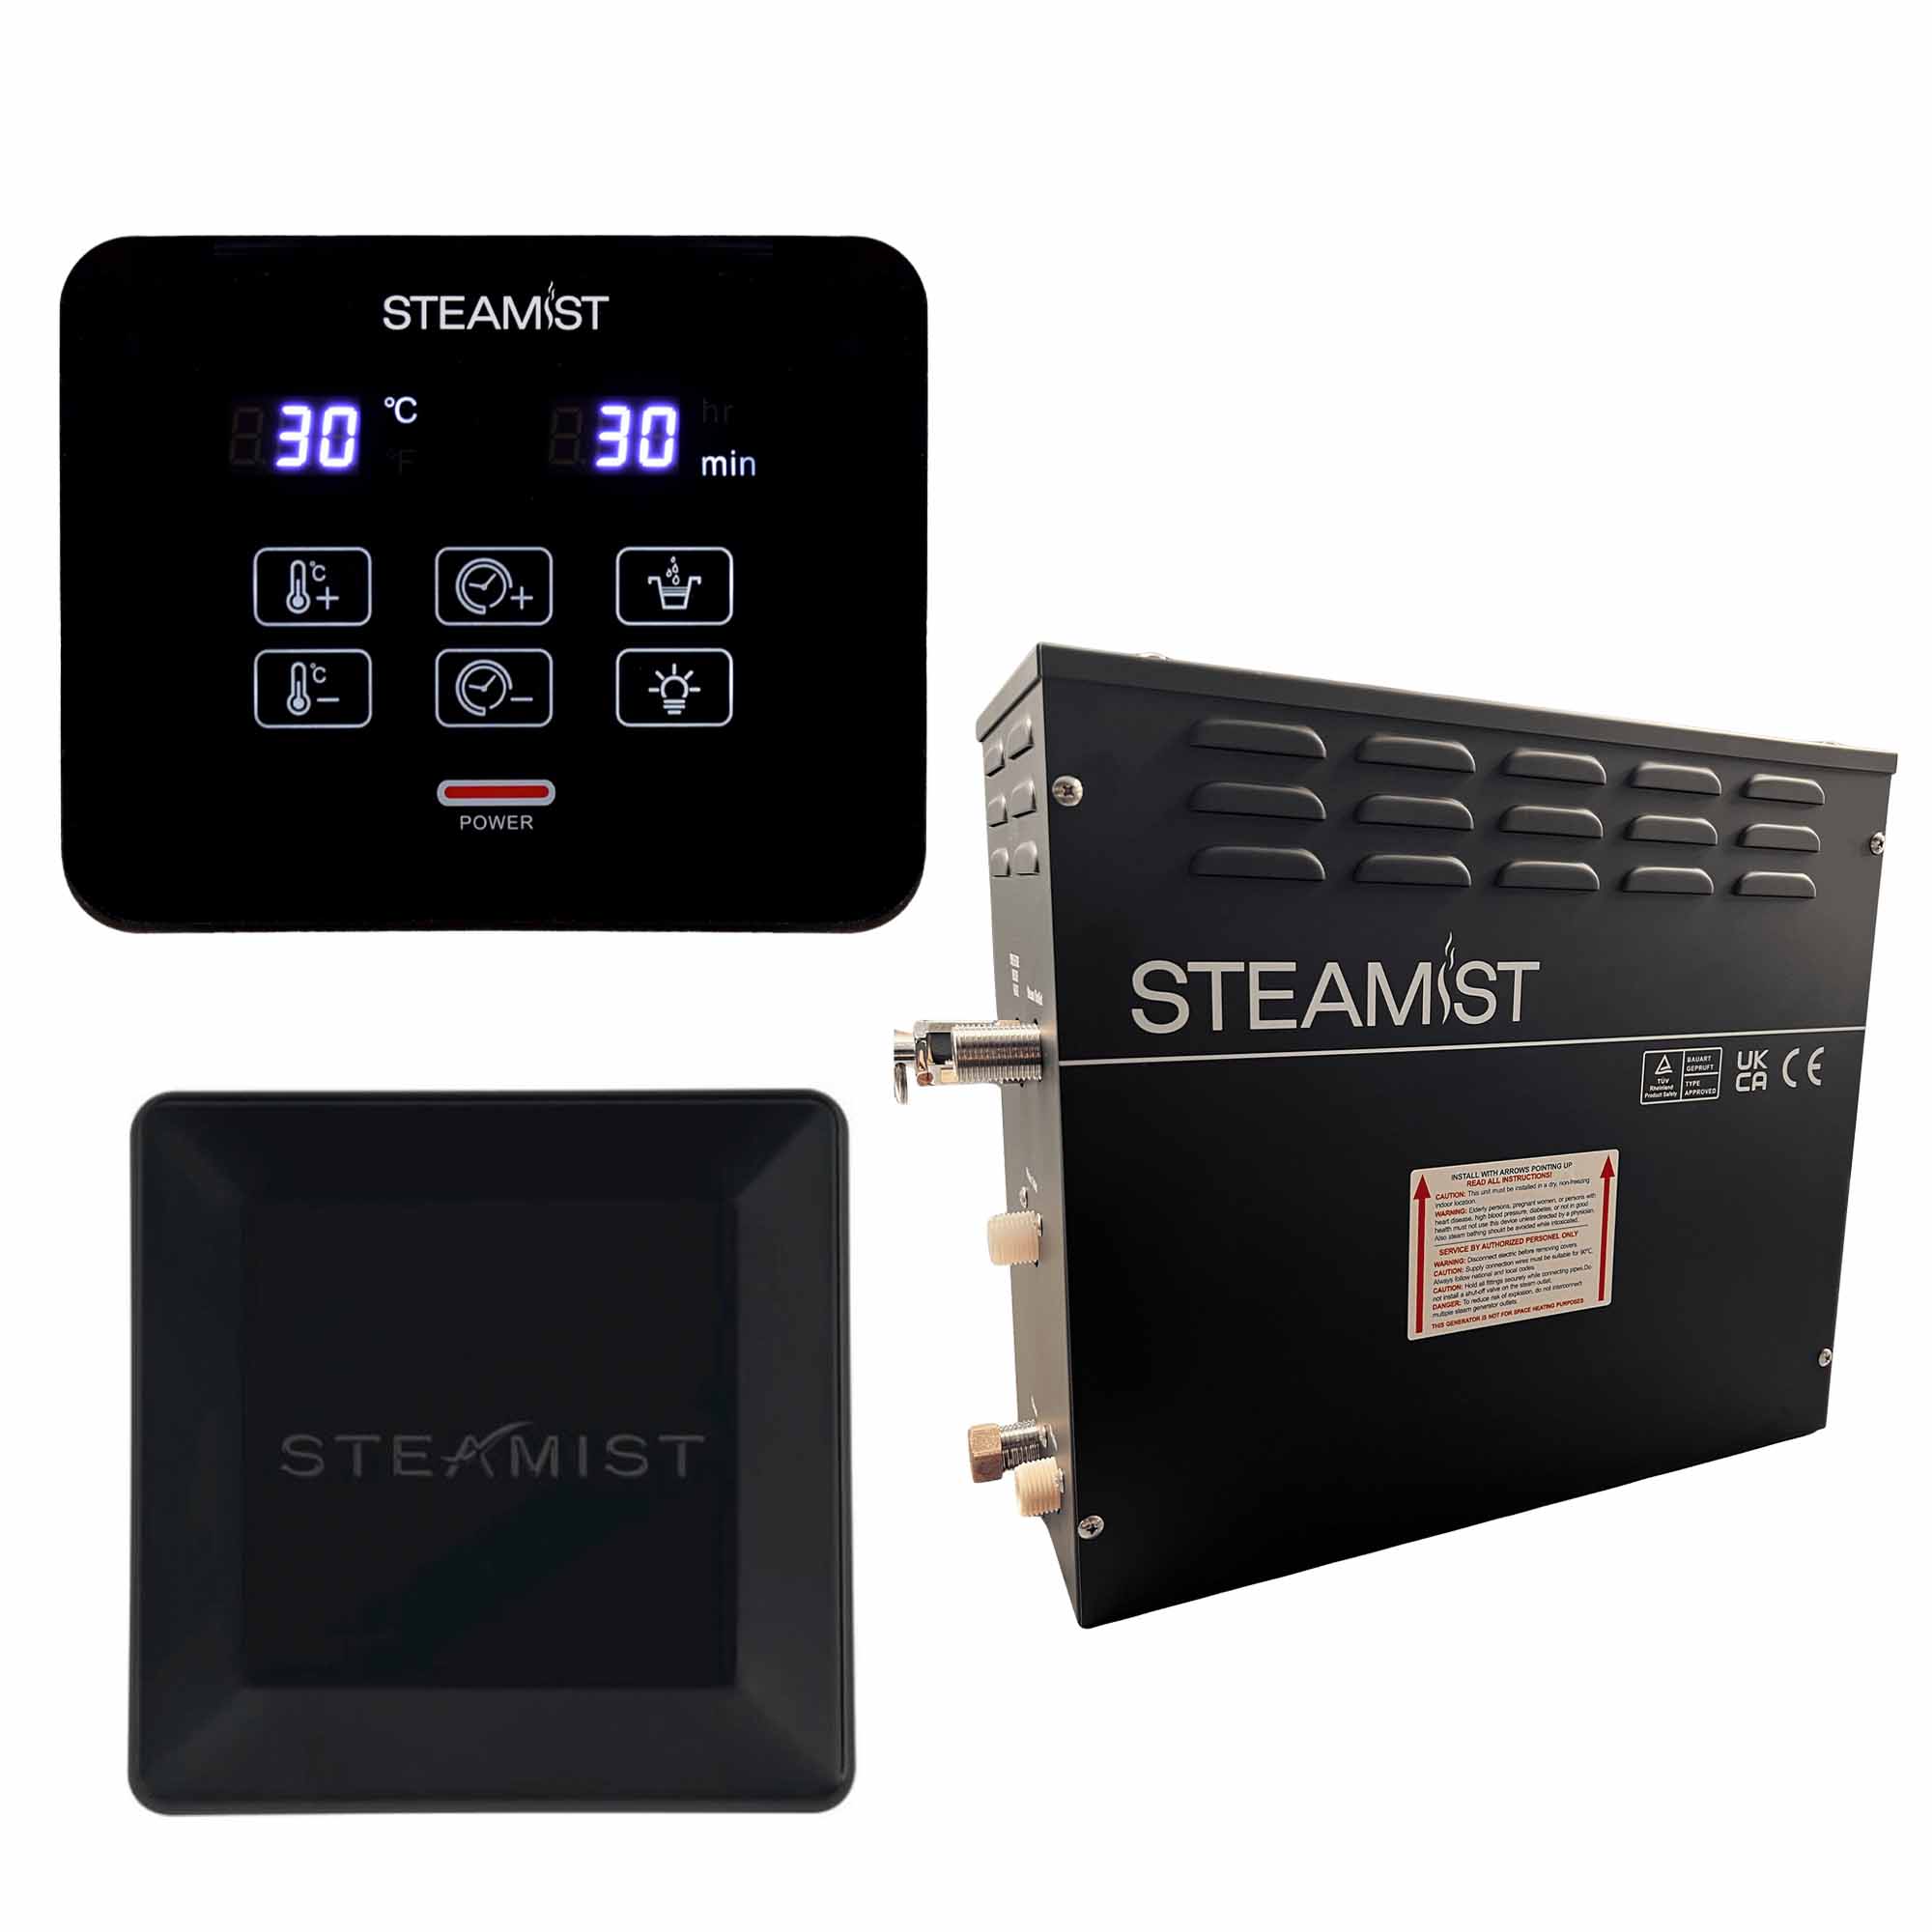 steamist steam shower generator kit matt black